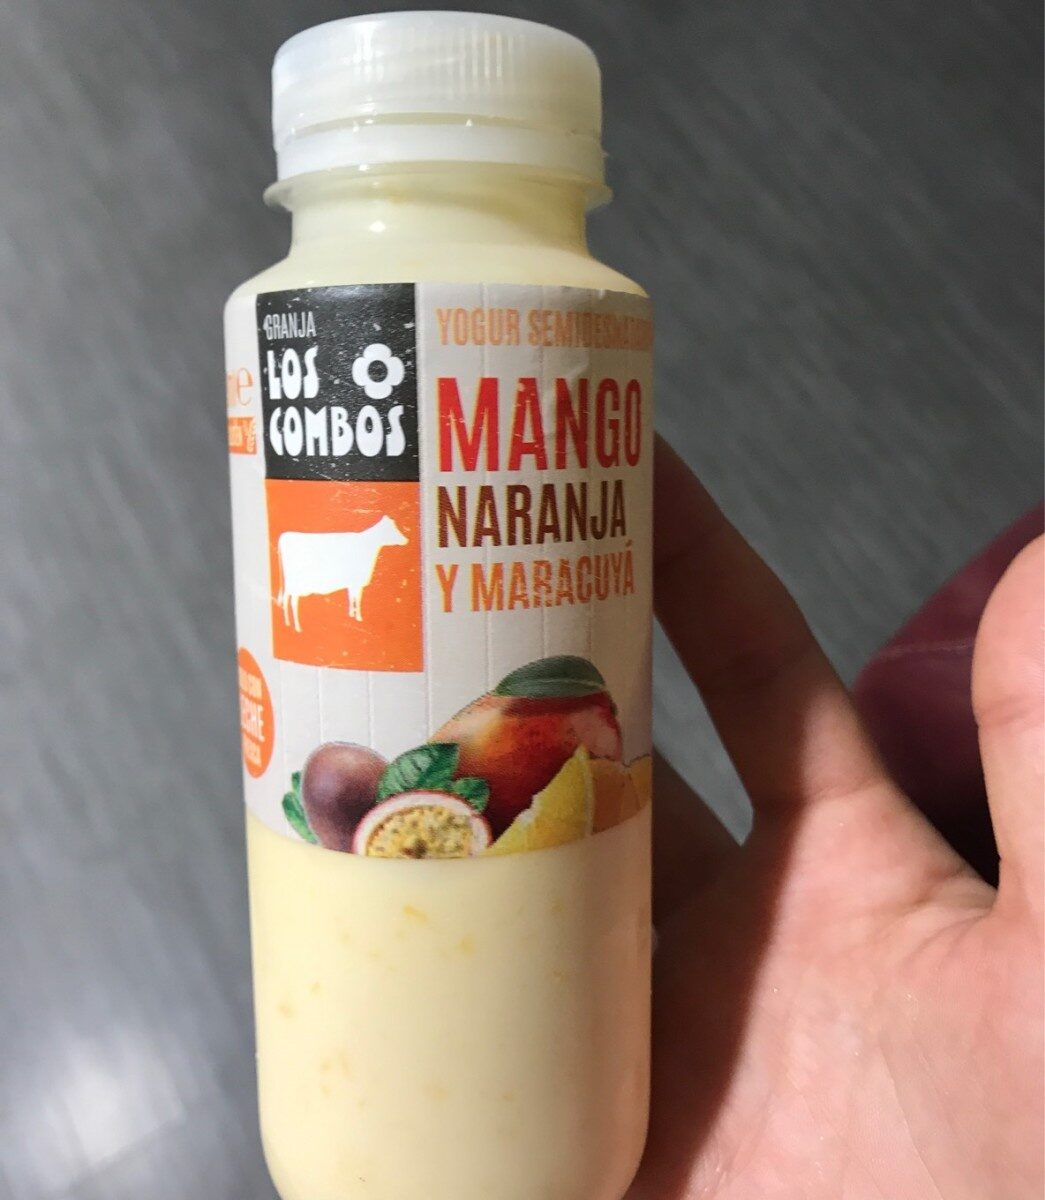 Yogur semidesnatado de mango naranja y maracuya - Produktua - fr